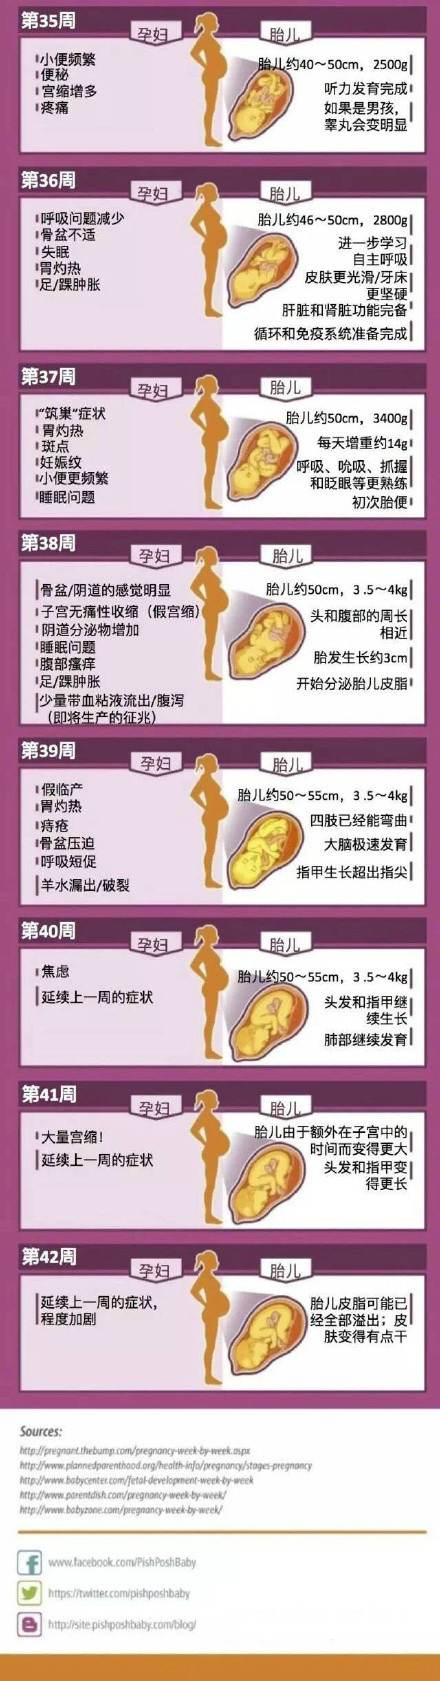 各个月孕妇肚子变化图图片